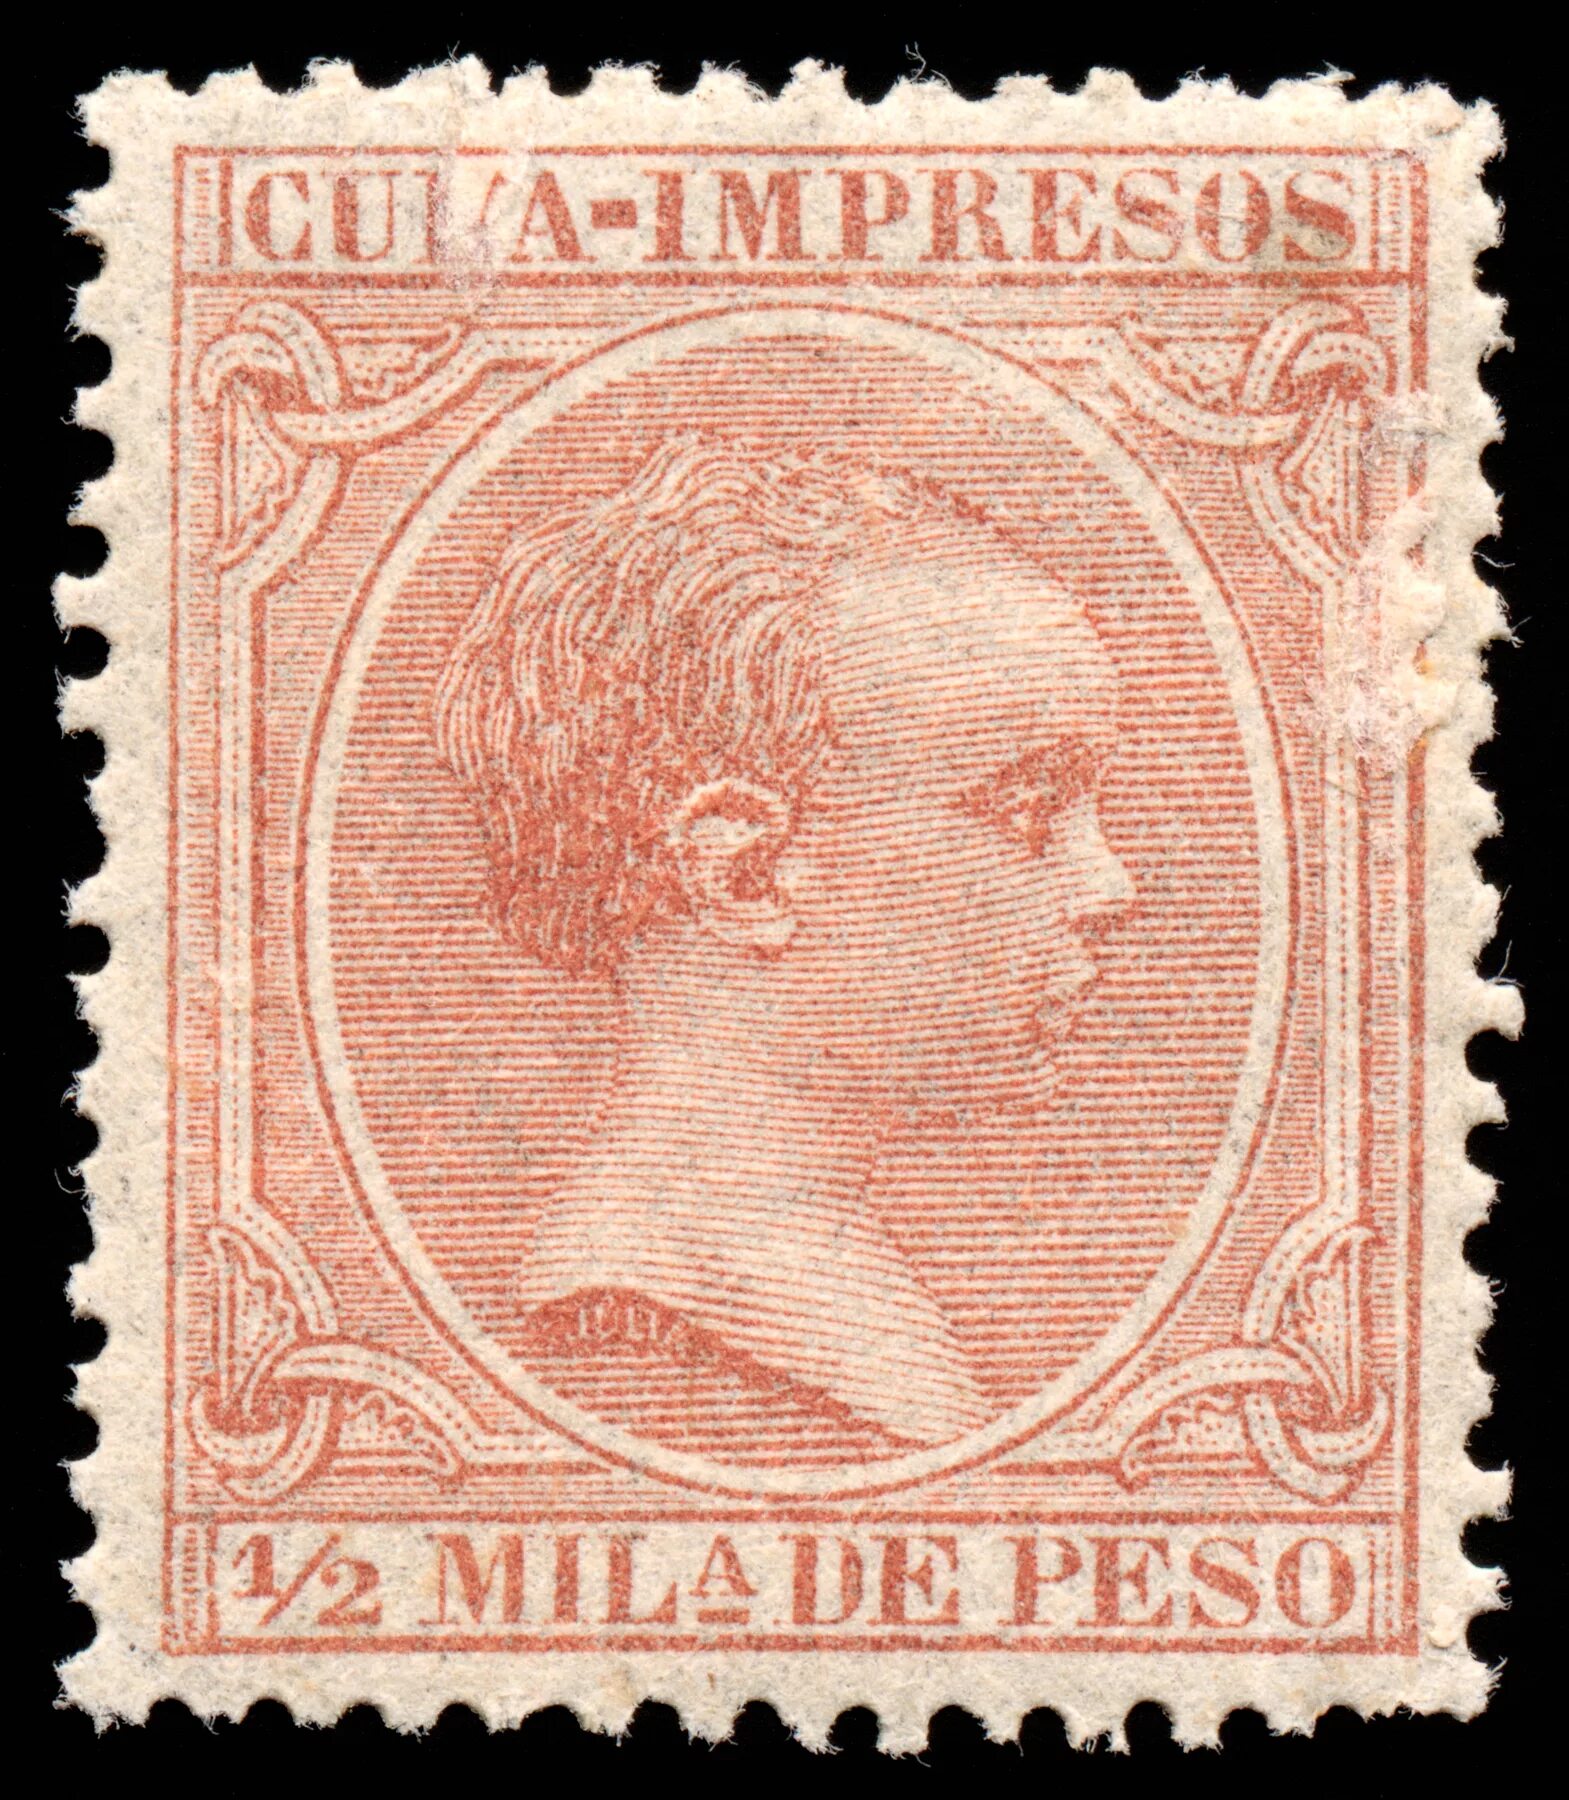 Brown king. Почтовые марки Филиппины. Марка 1c postes. Почтовые марки испанской Кубы Король Альфонсо 13. Почтовые марки Филиппины 1974.